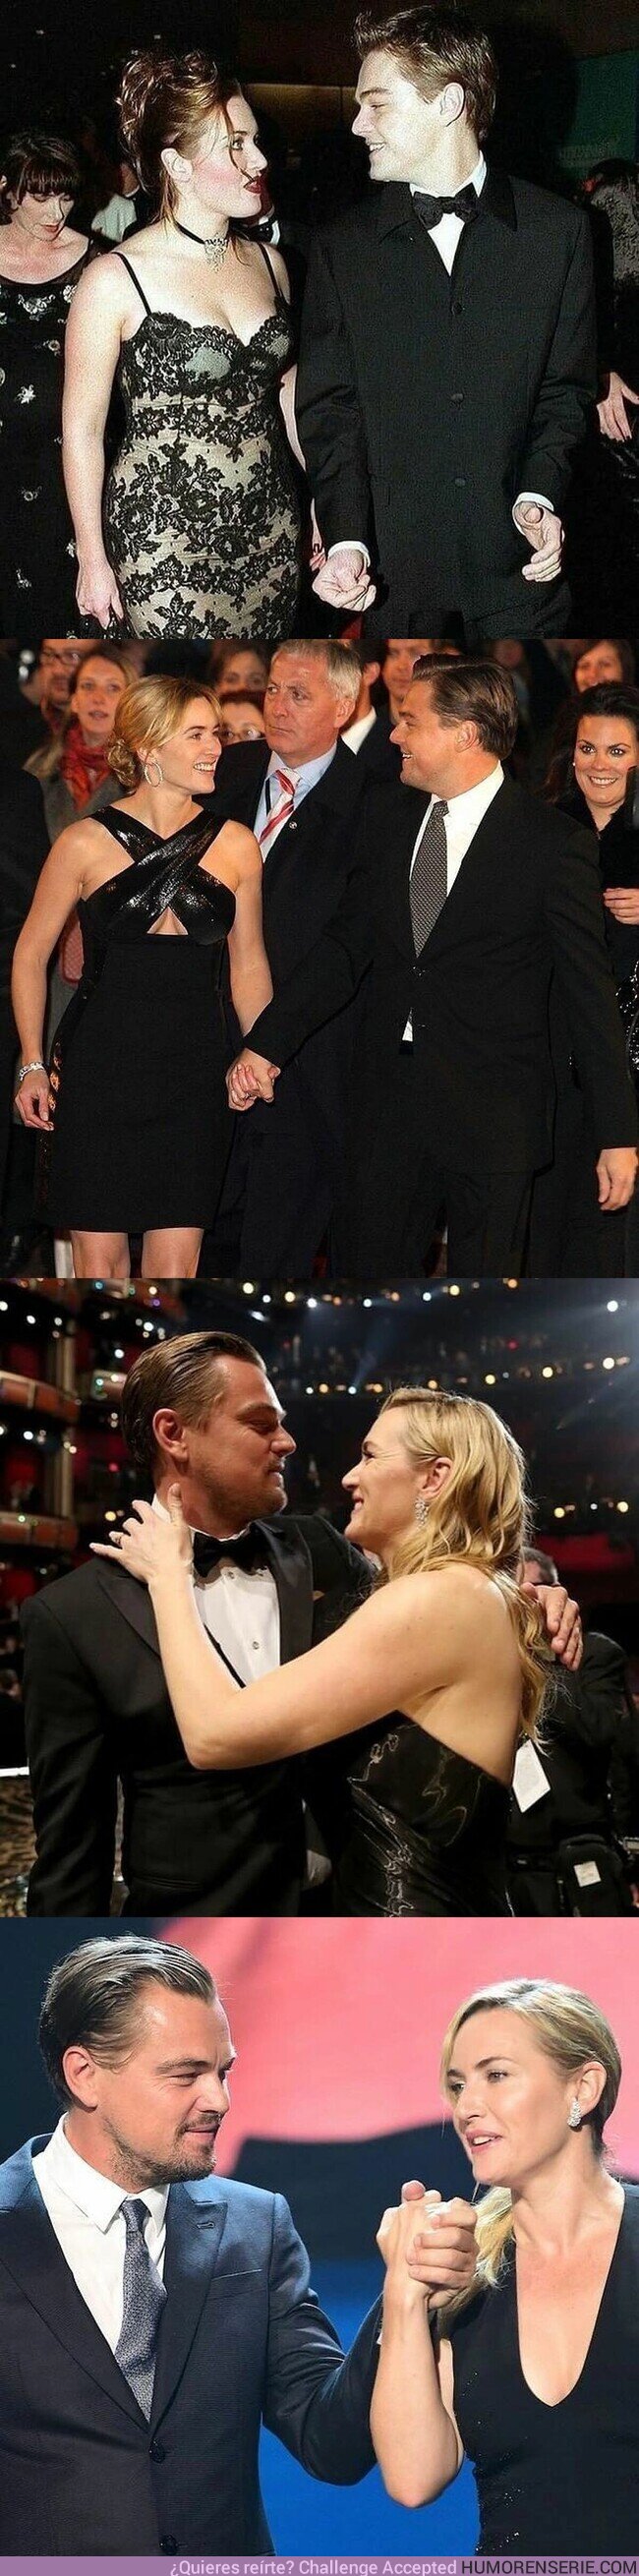 143776 - La amistad de Leonardo DiCaprio y Kate Winslet ha permanecido a lo largo de los años